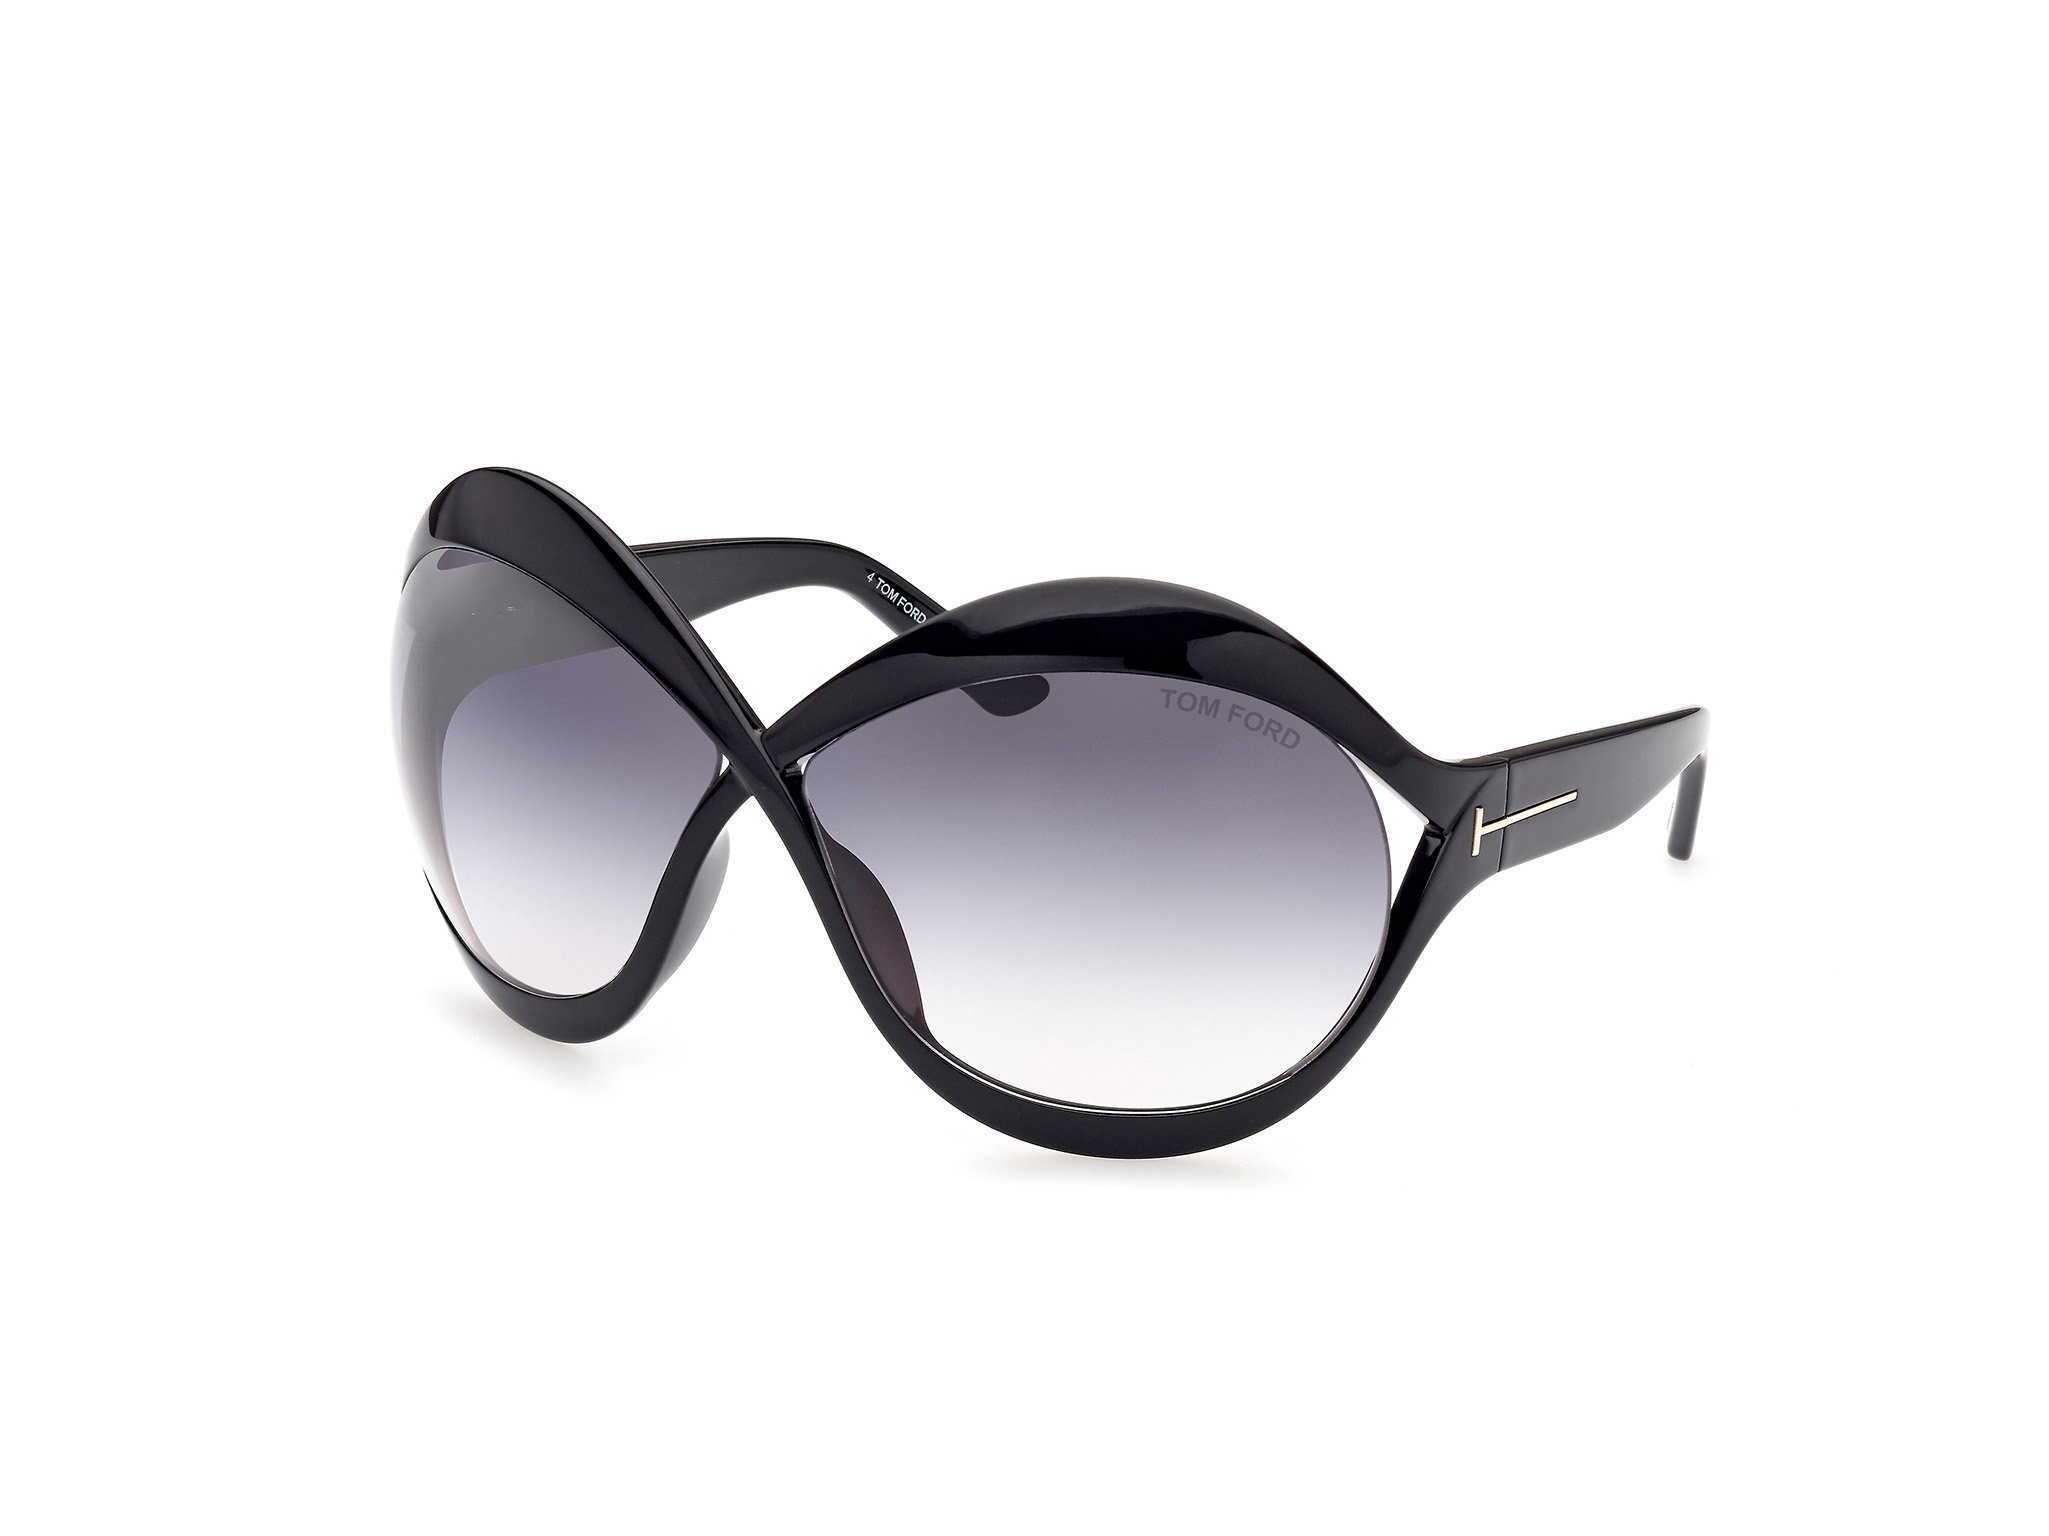 Das Bild zeigt die Sonnenbrille Carine FT0902 von der Marke Tom Ford in schwarz